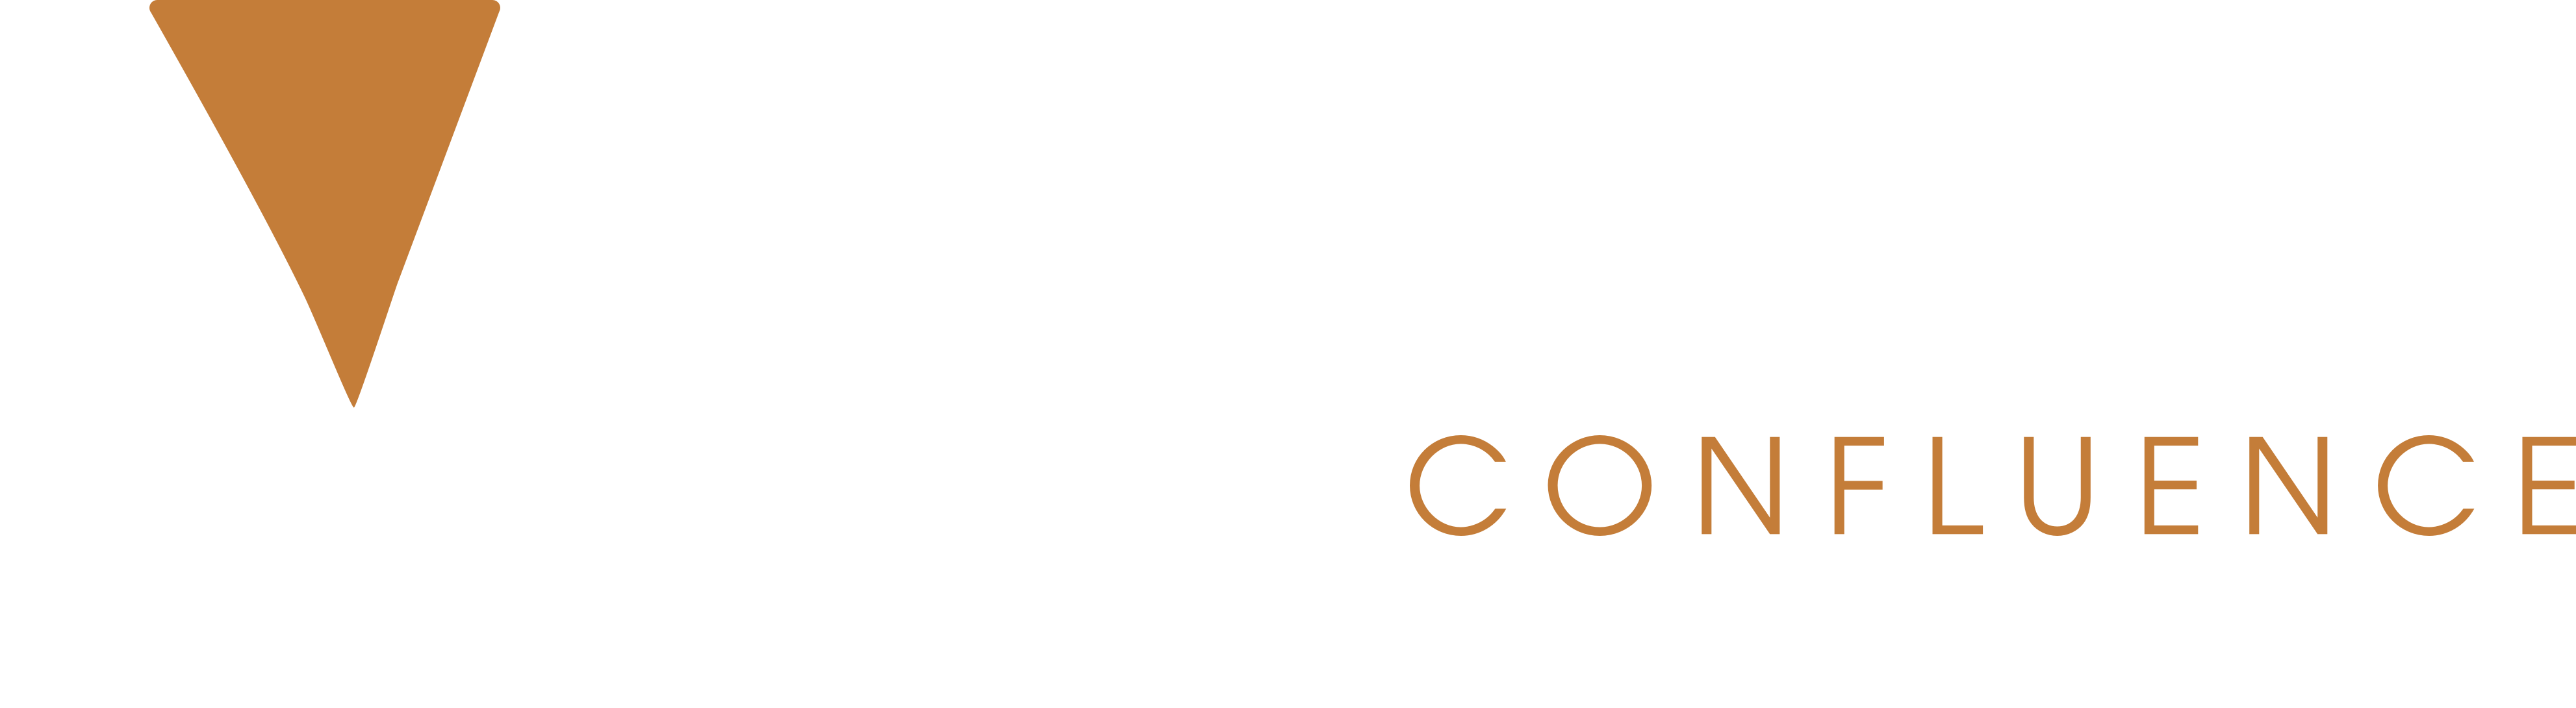 Notaires Lyon Confluence